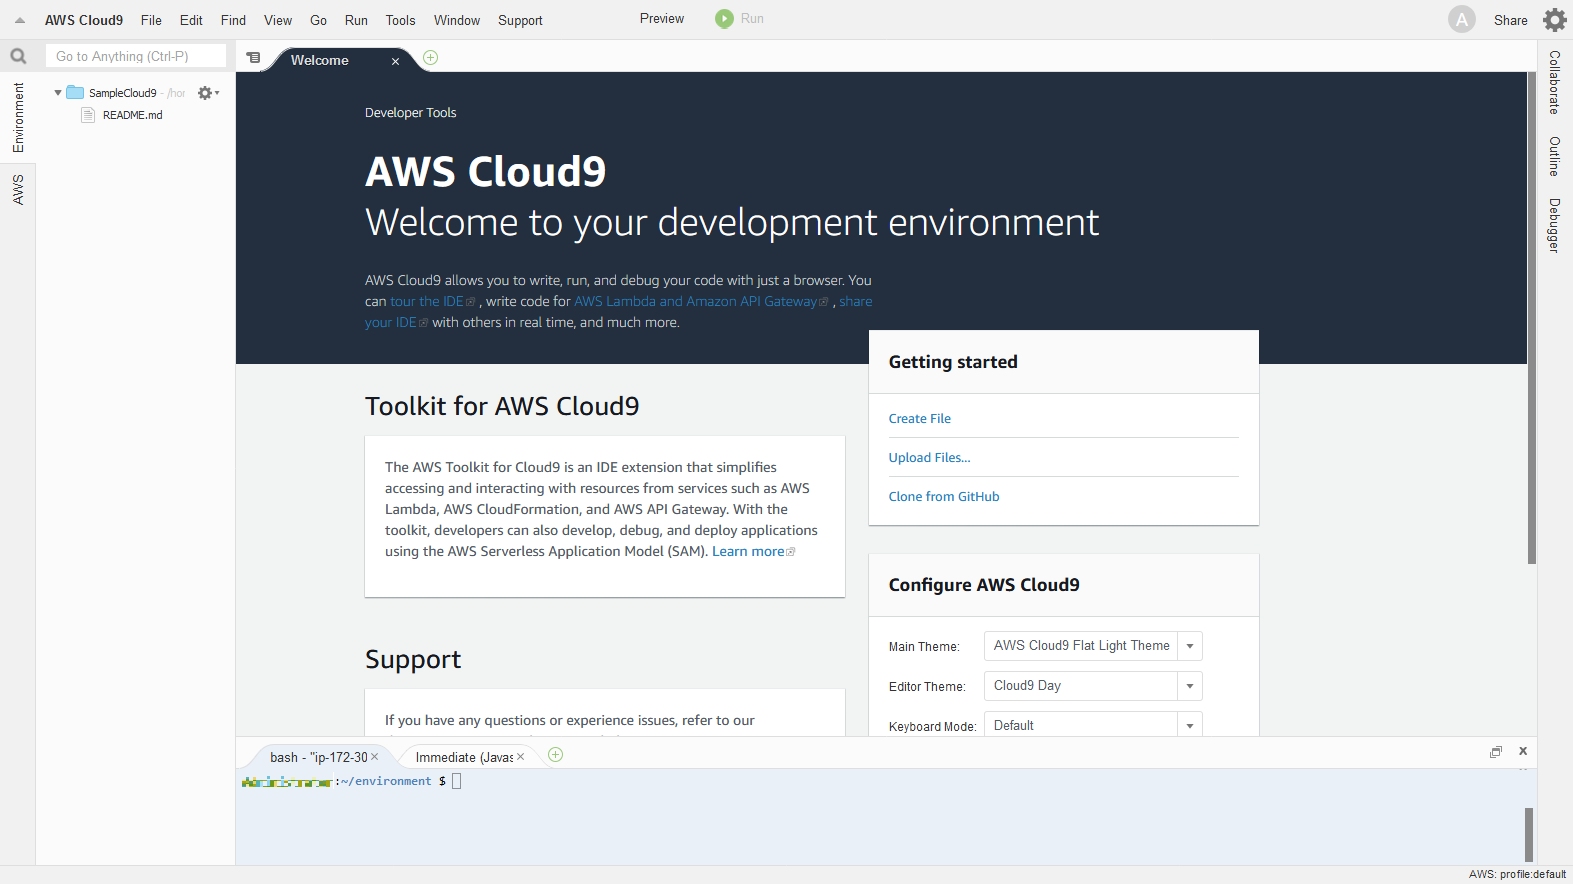 SampleCloud9 - AWS Cloud9.png